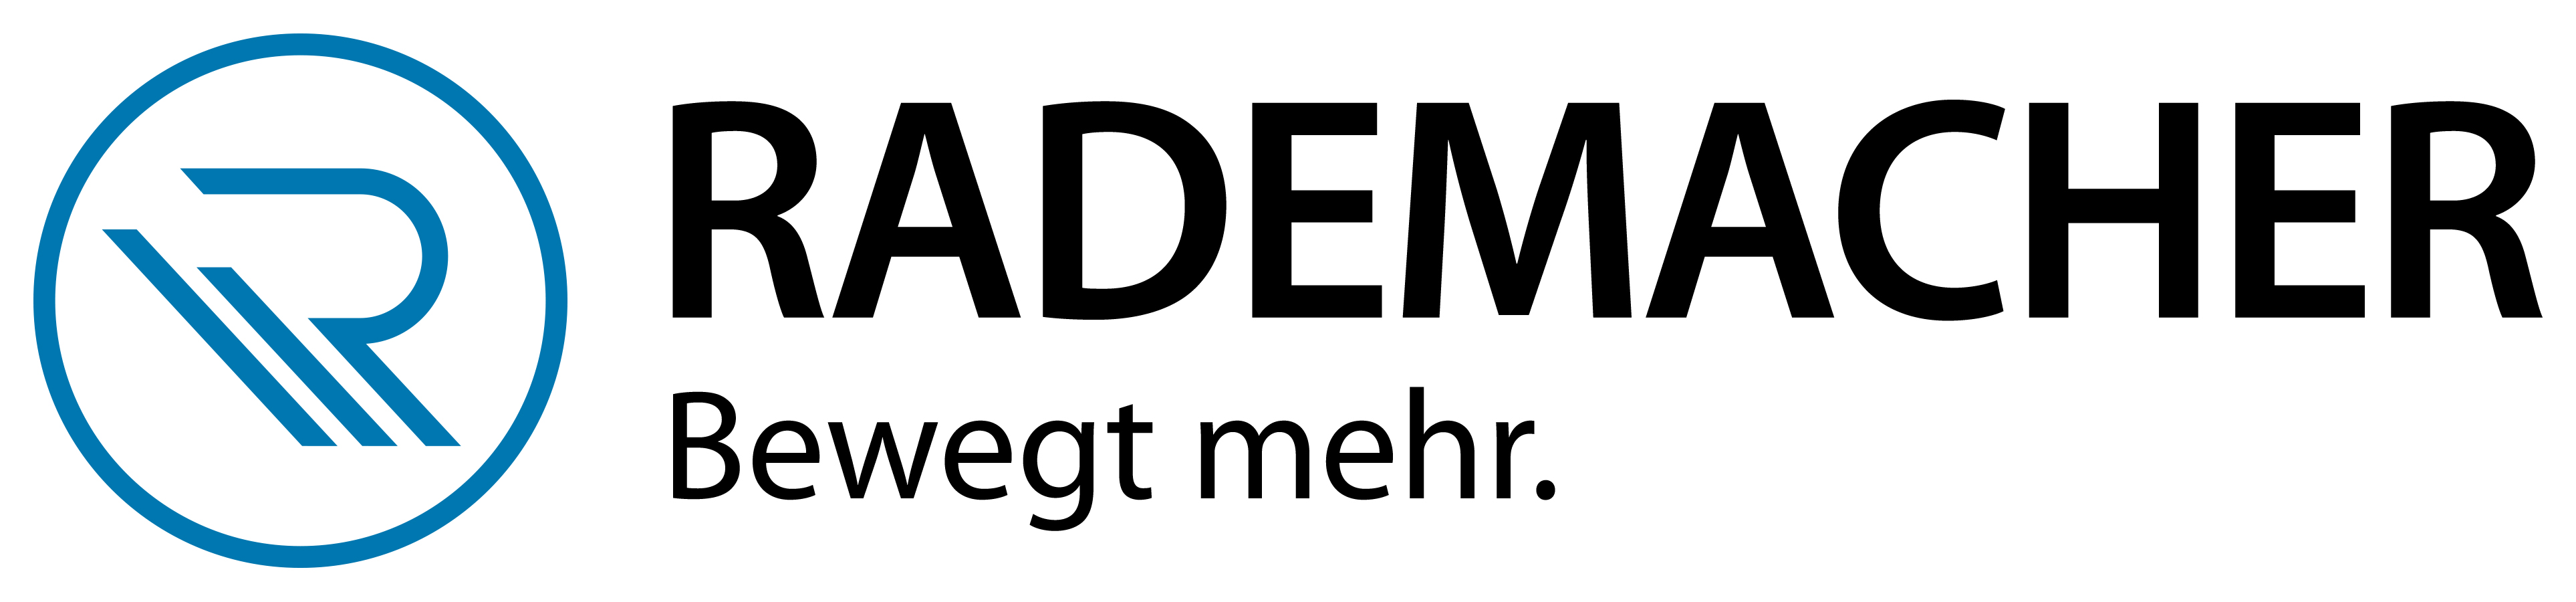 Rademacher_Logo